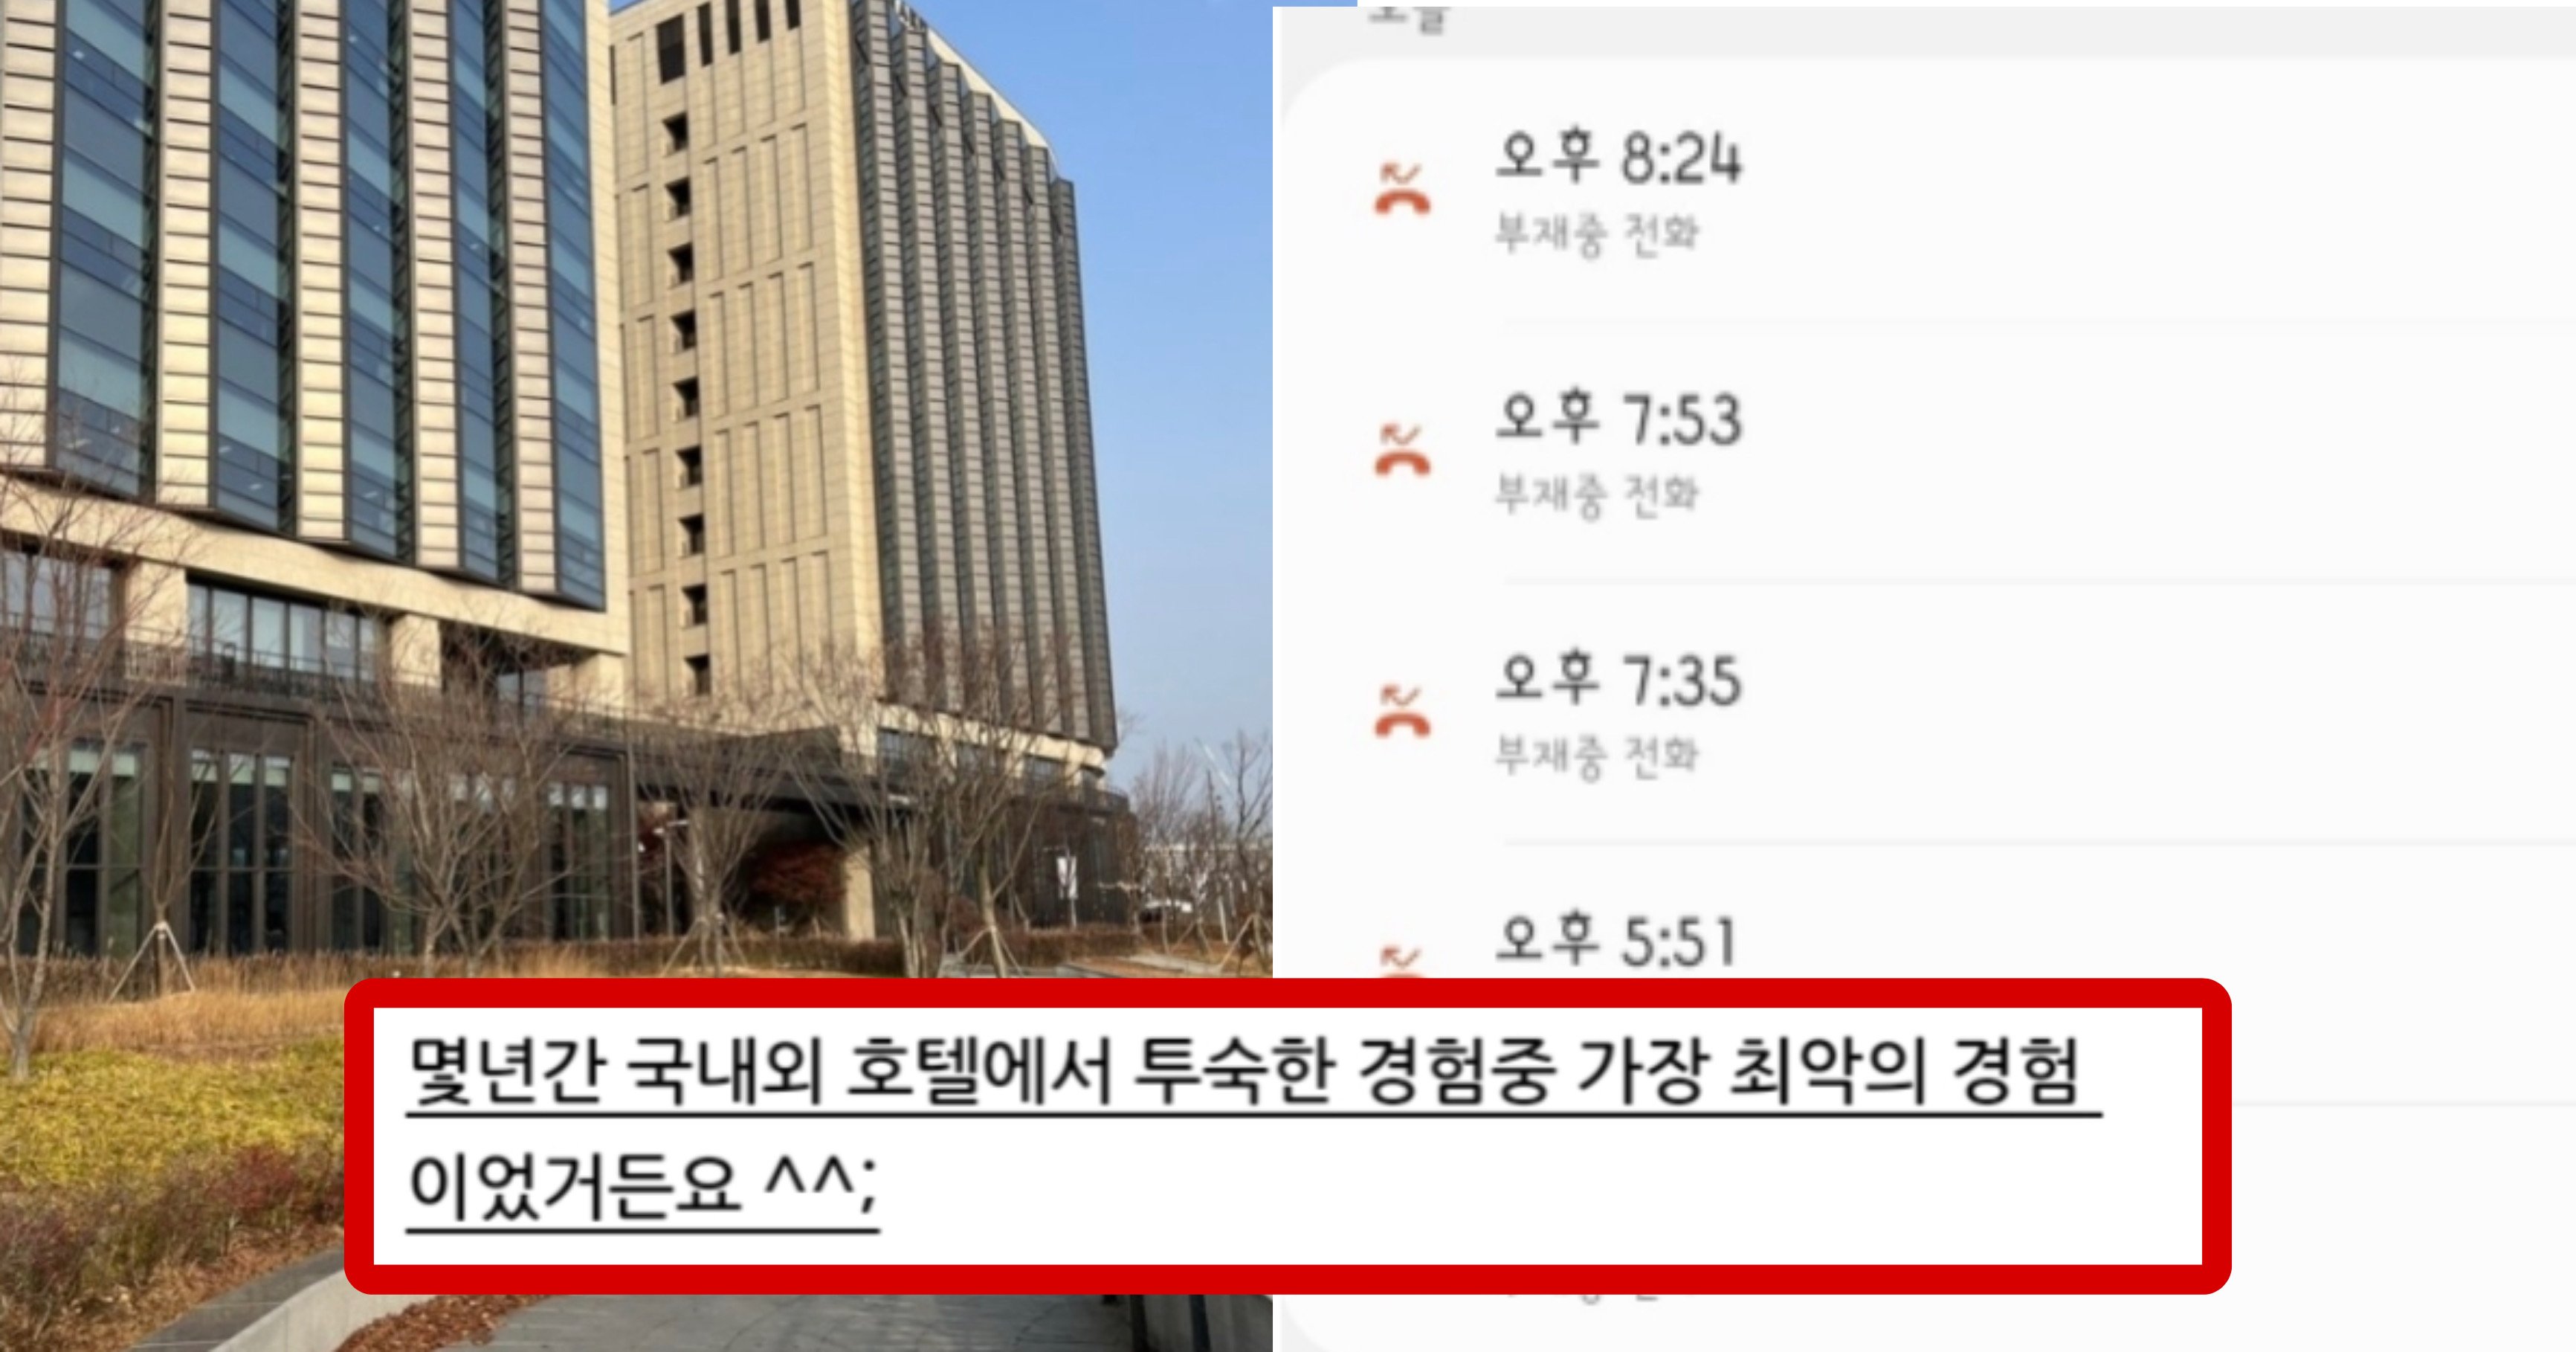 7aa88cf6 da85 4b3b adb4 d6c809a90348.jpeg?resize=412,275 - 호텔 커뮤니티를 난리 나게 만든 서울 의 한 호텔 비추 후기(+사진)